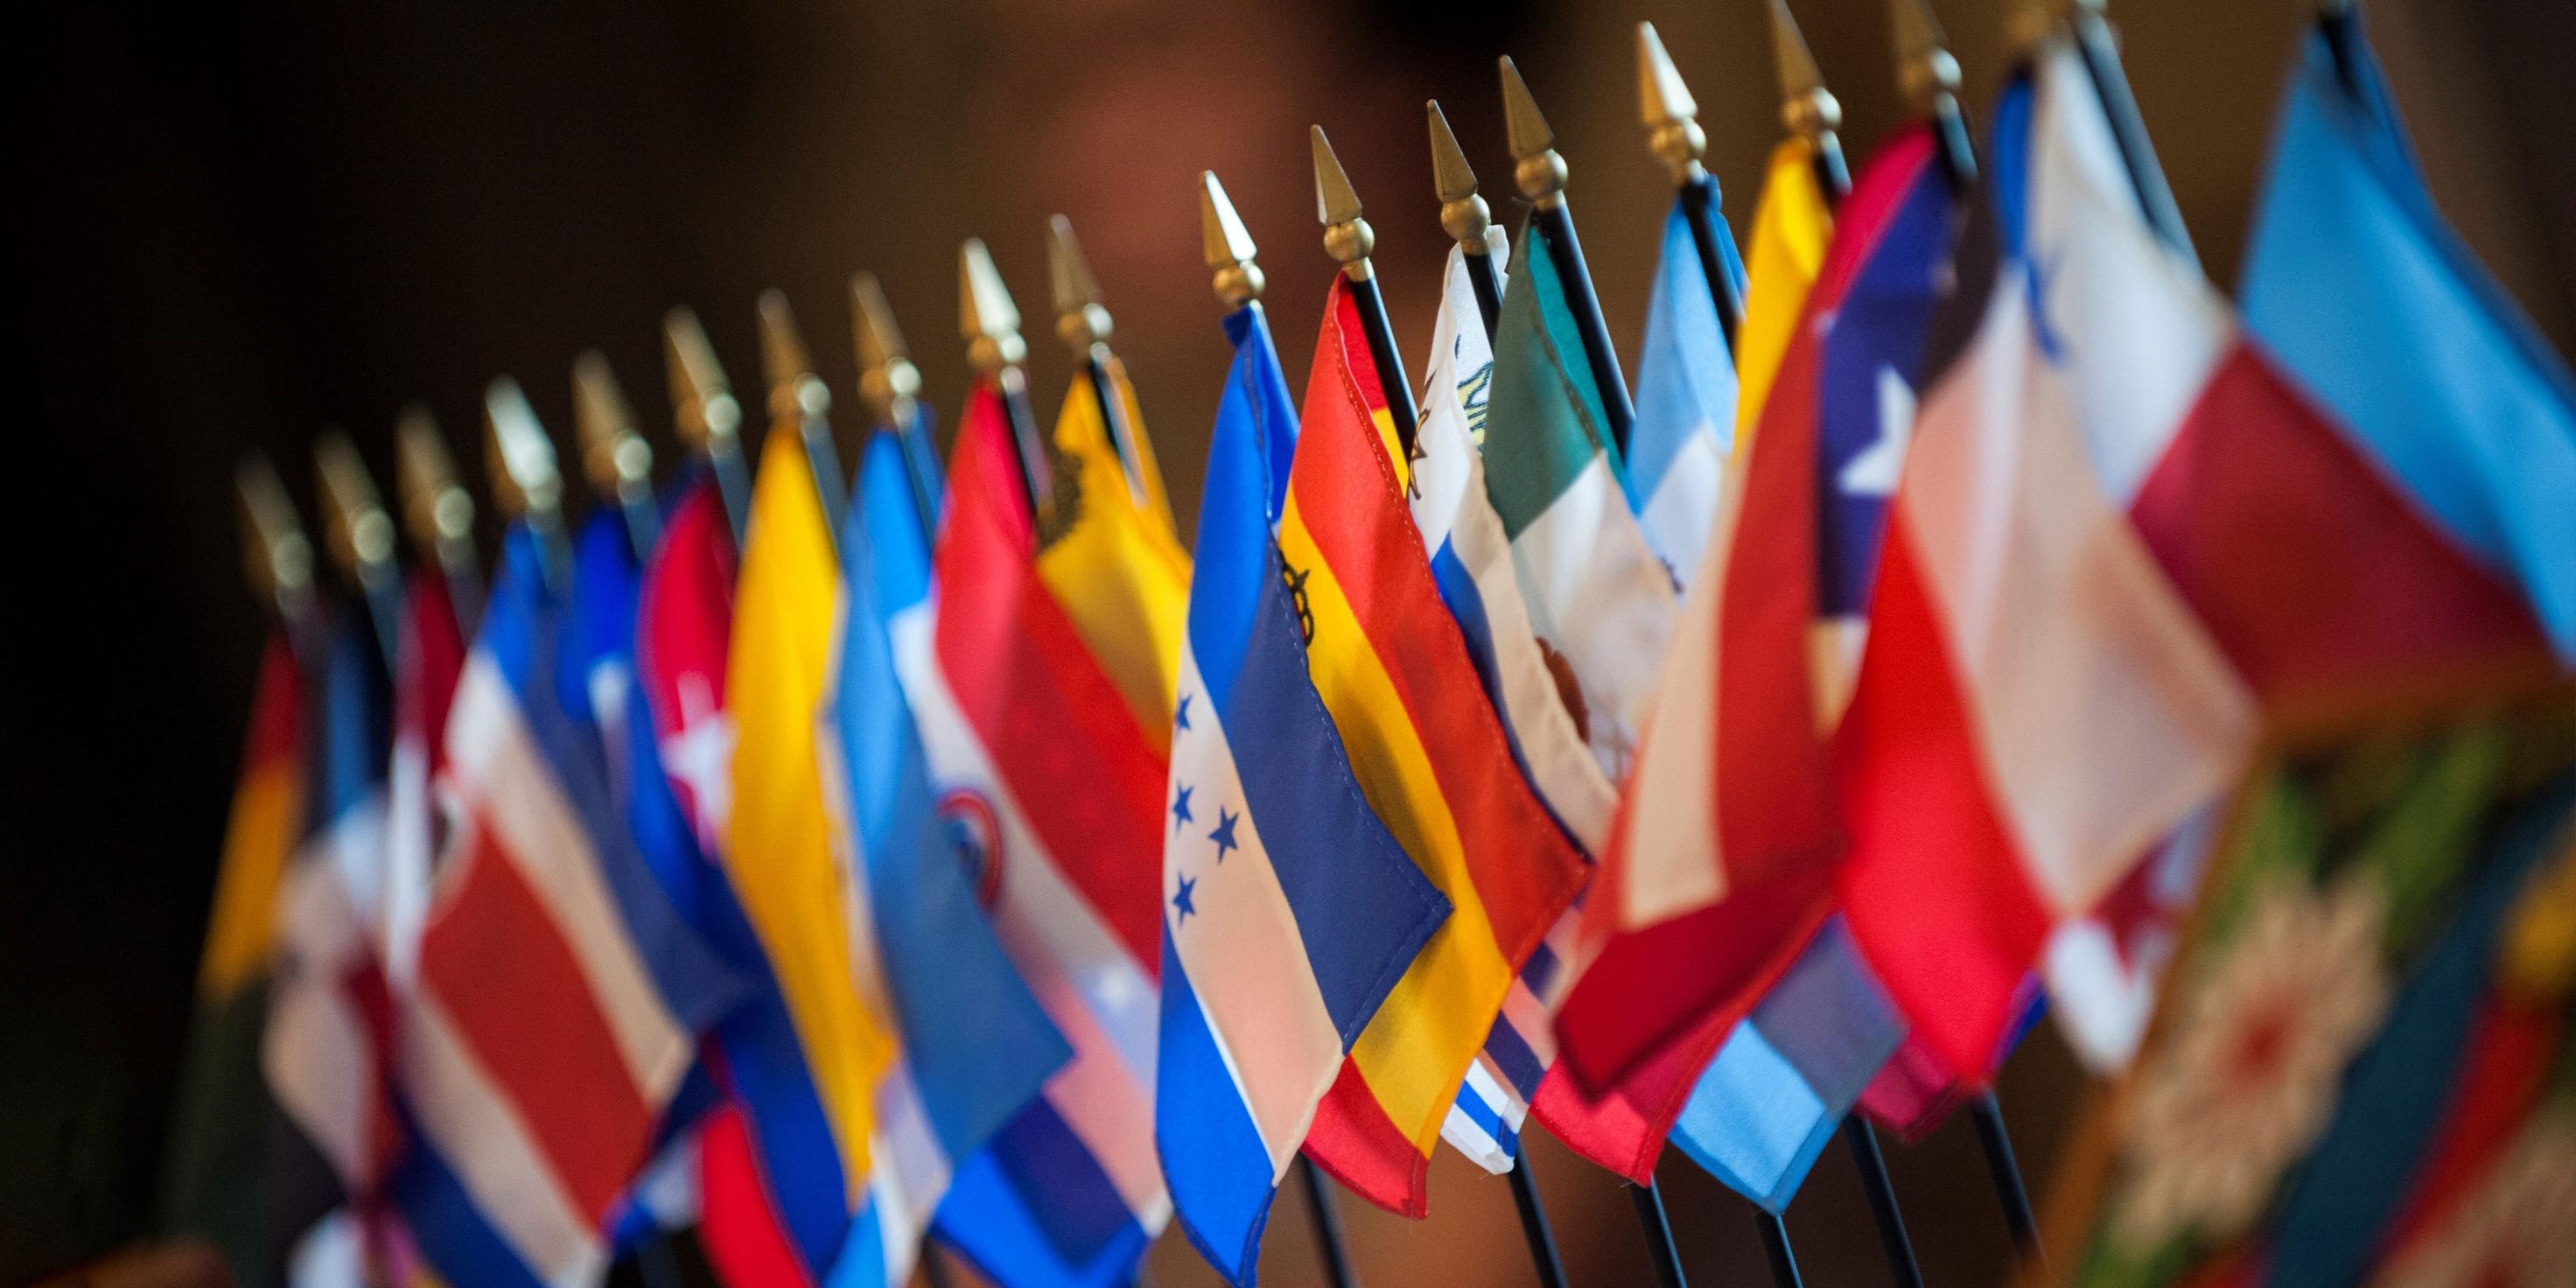 تصاعد حدة التوترات الدبلوماسية بين بلدان أمريكا اللاتينية